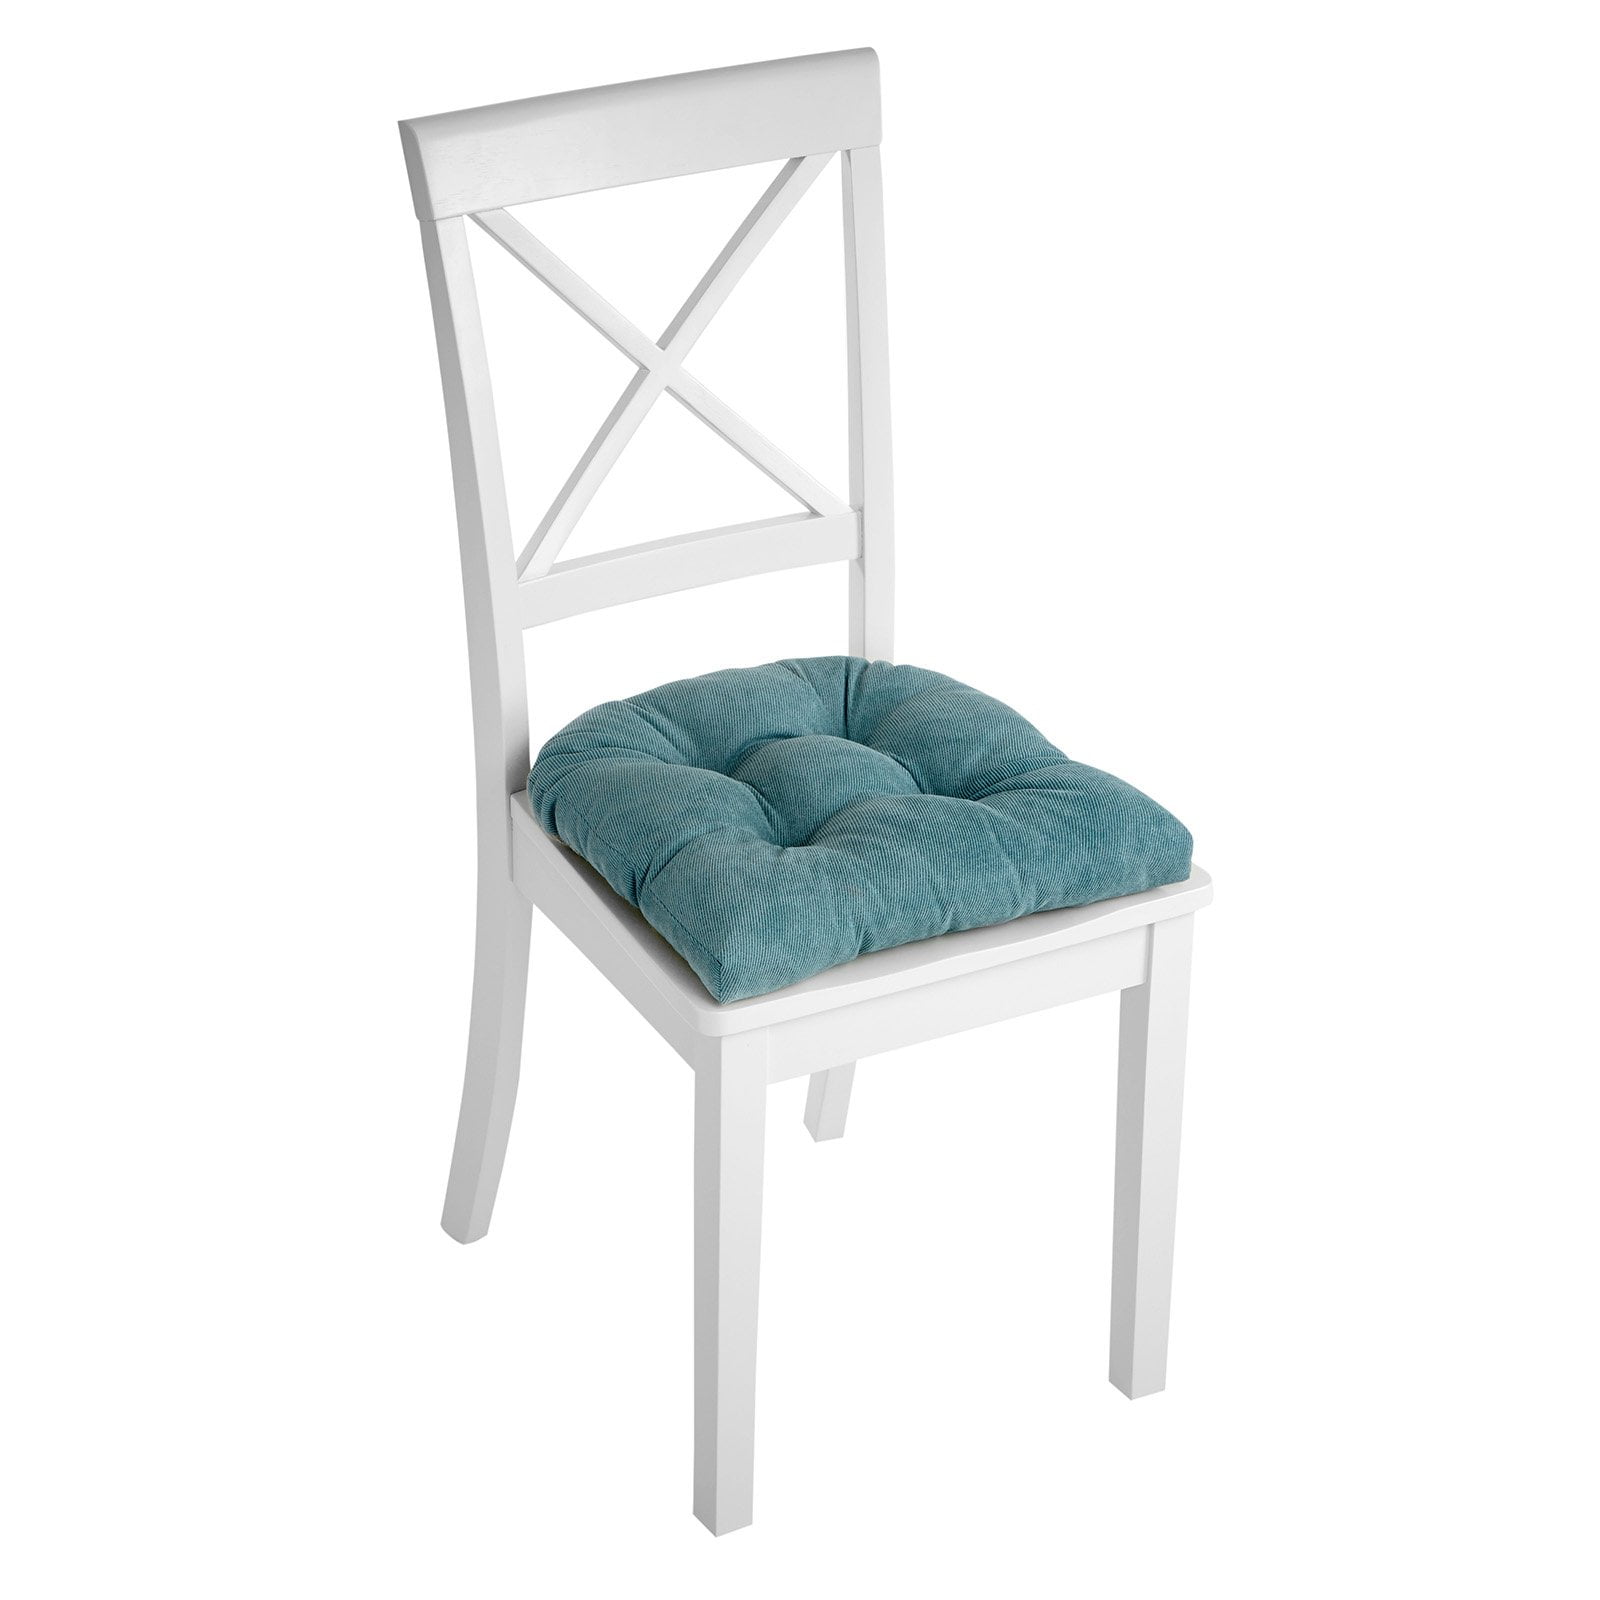 Non Slip Gripper Chair Pad Cushion 17, Gripper Chair Cushions 17 X